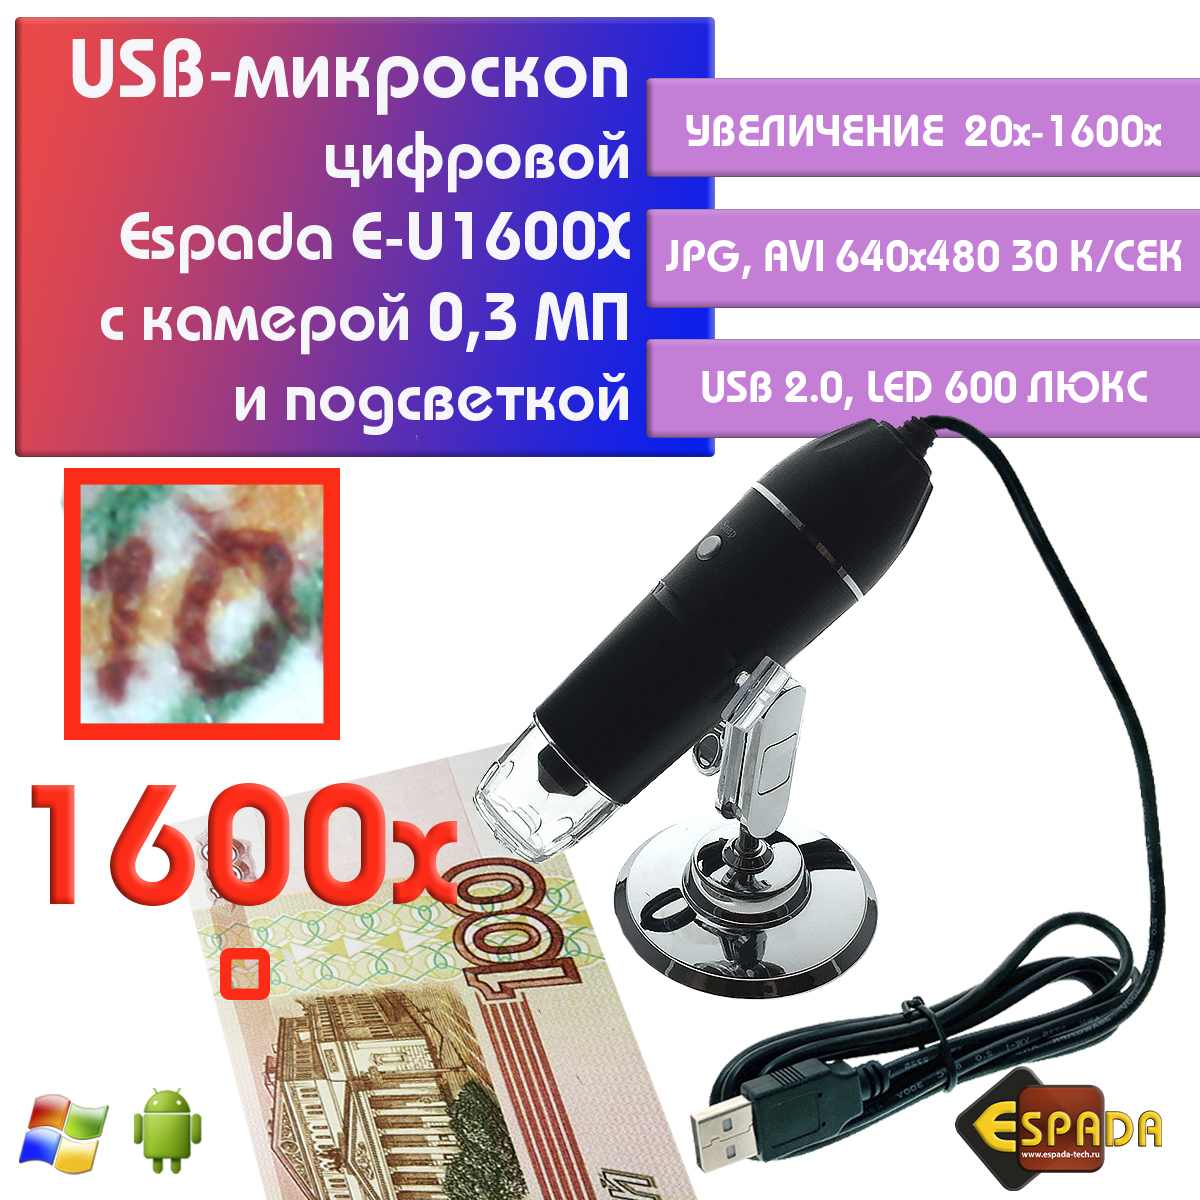 Портативный цифровой USB-микроскоп Espada E-U1600X c камерой 0,3 МП и увеличением 1600x видеокарта gigabyte geforce gtx 1650 d6 4g gv n1656d6 4gd 2 0